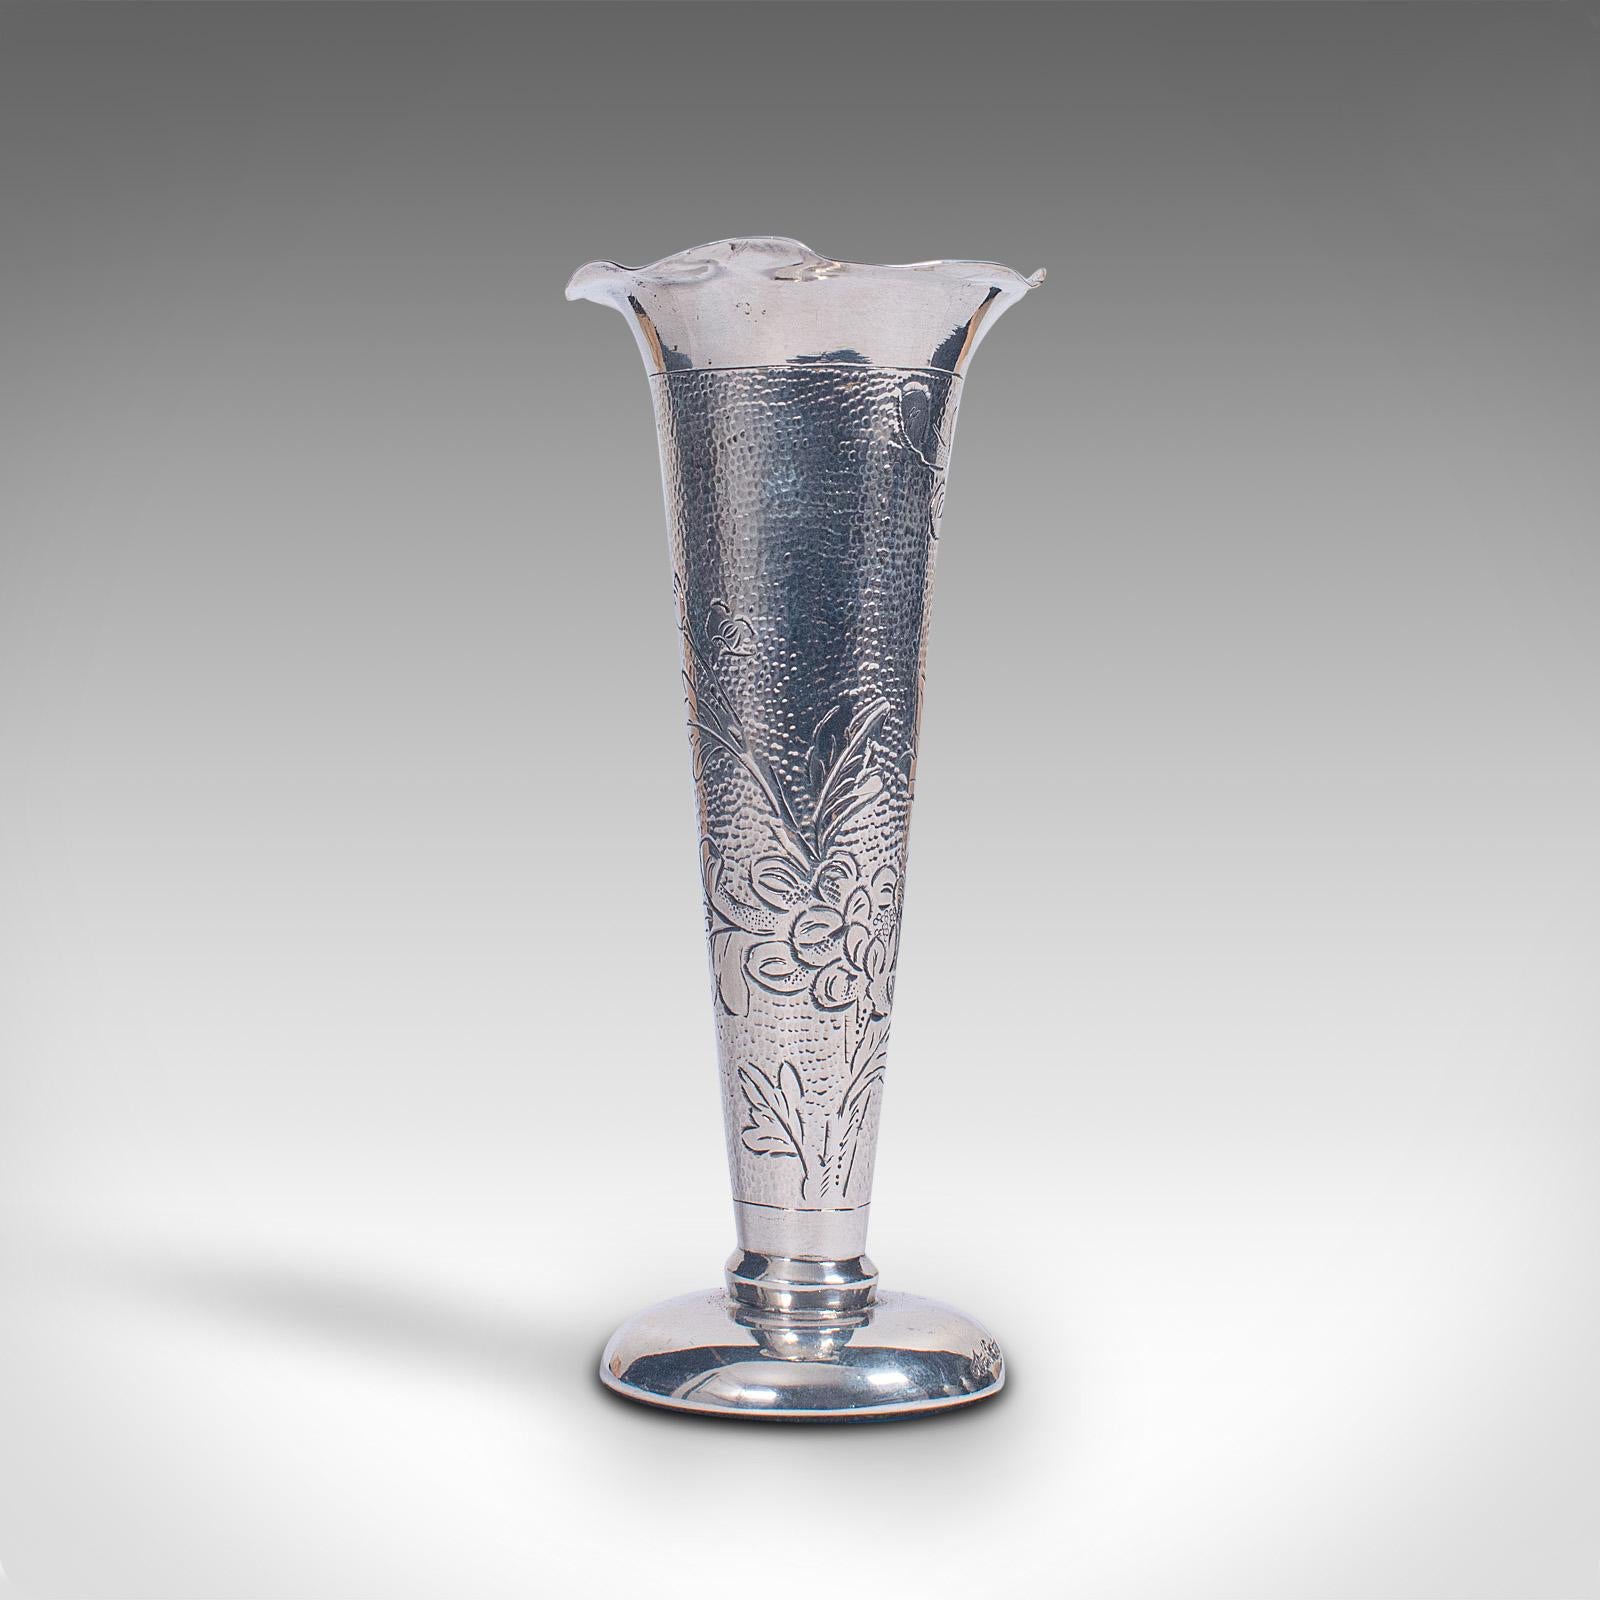 Dies ist eine kleine Vintage Vase mit einem Stiel. Eine chinesische, dekorative Flöte aus Sterlingsilber aus der Mitte des 20. Jahrhunderts, um 1960.

Kompakte Stielvase mit Charme und ansprechenden Details
Zeigt eine wünschenswerte gealterte